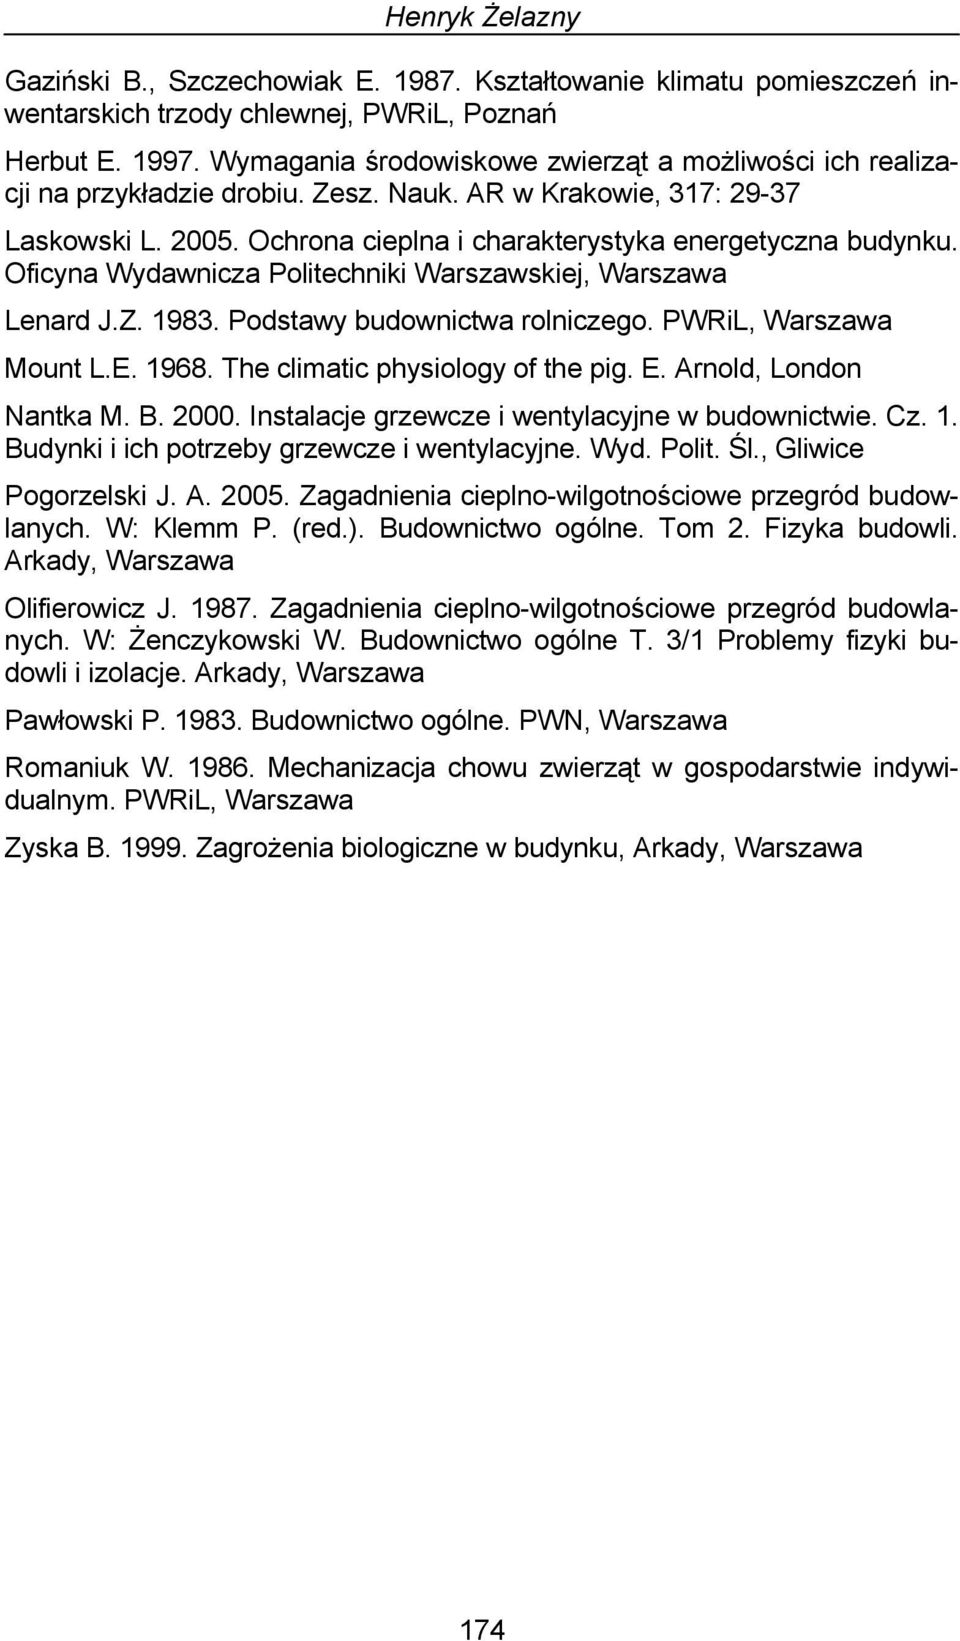 Oficyna Wydawnicza Politechniki Warszawskiej, Warszawa Lenard J.Z. 1983. Podstawy budownictwa rolniczego. PWRiL, Warszawa Mount L.E. 1968. The climatic physiology of the pig. E.